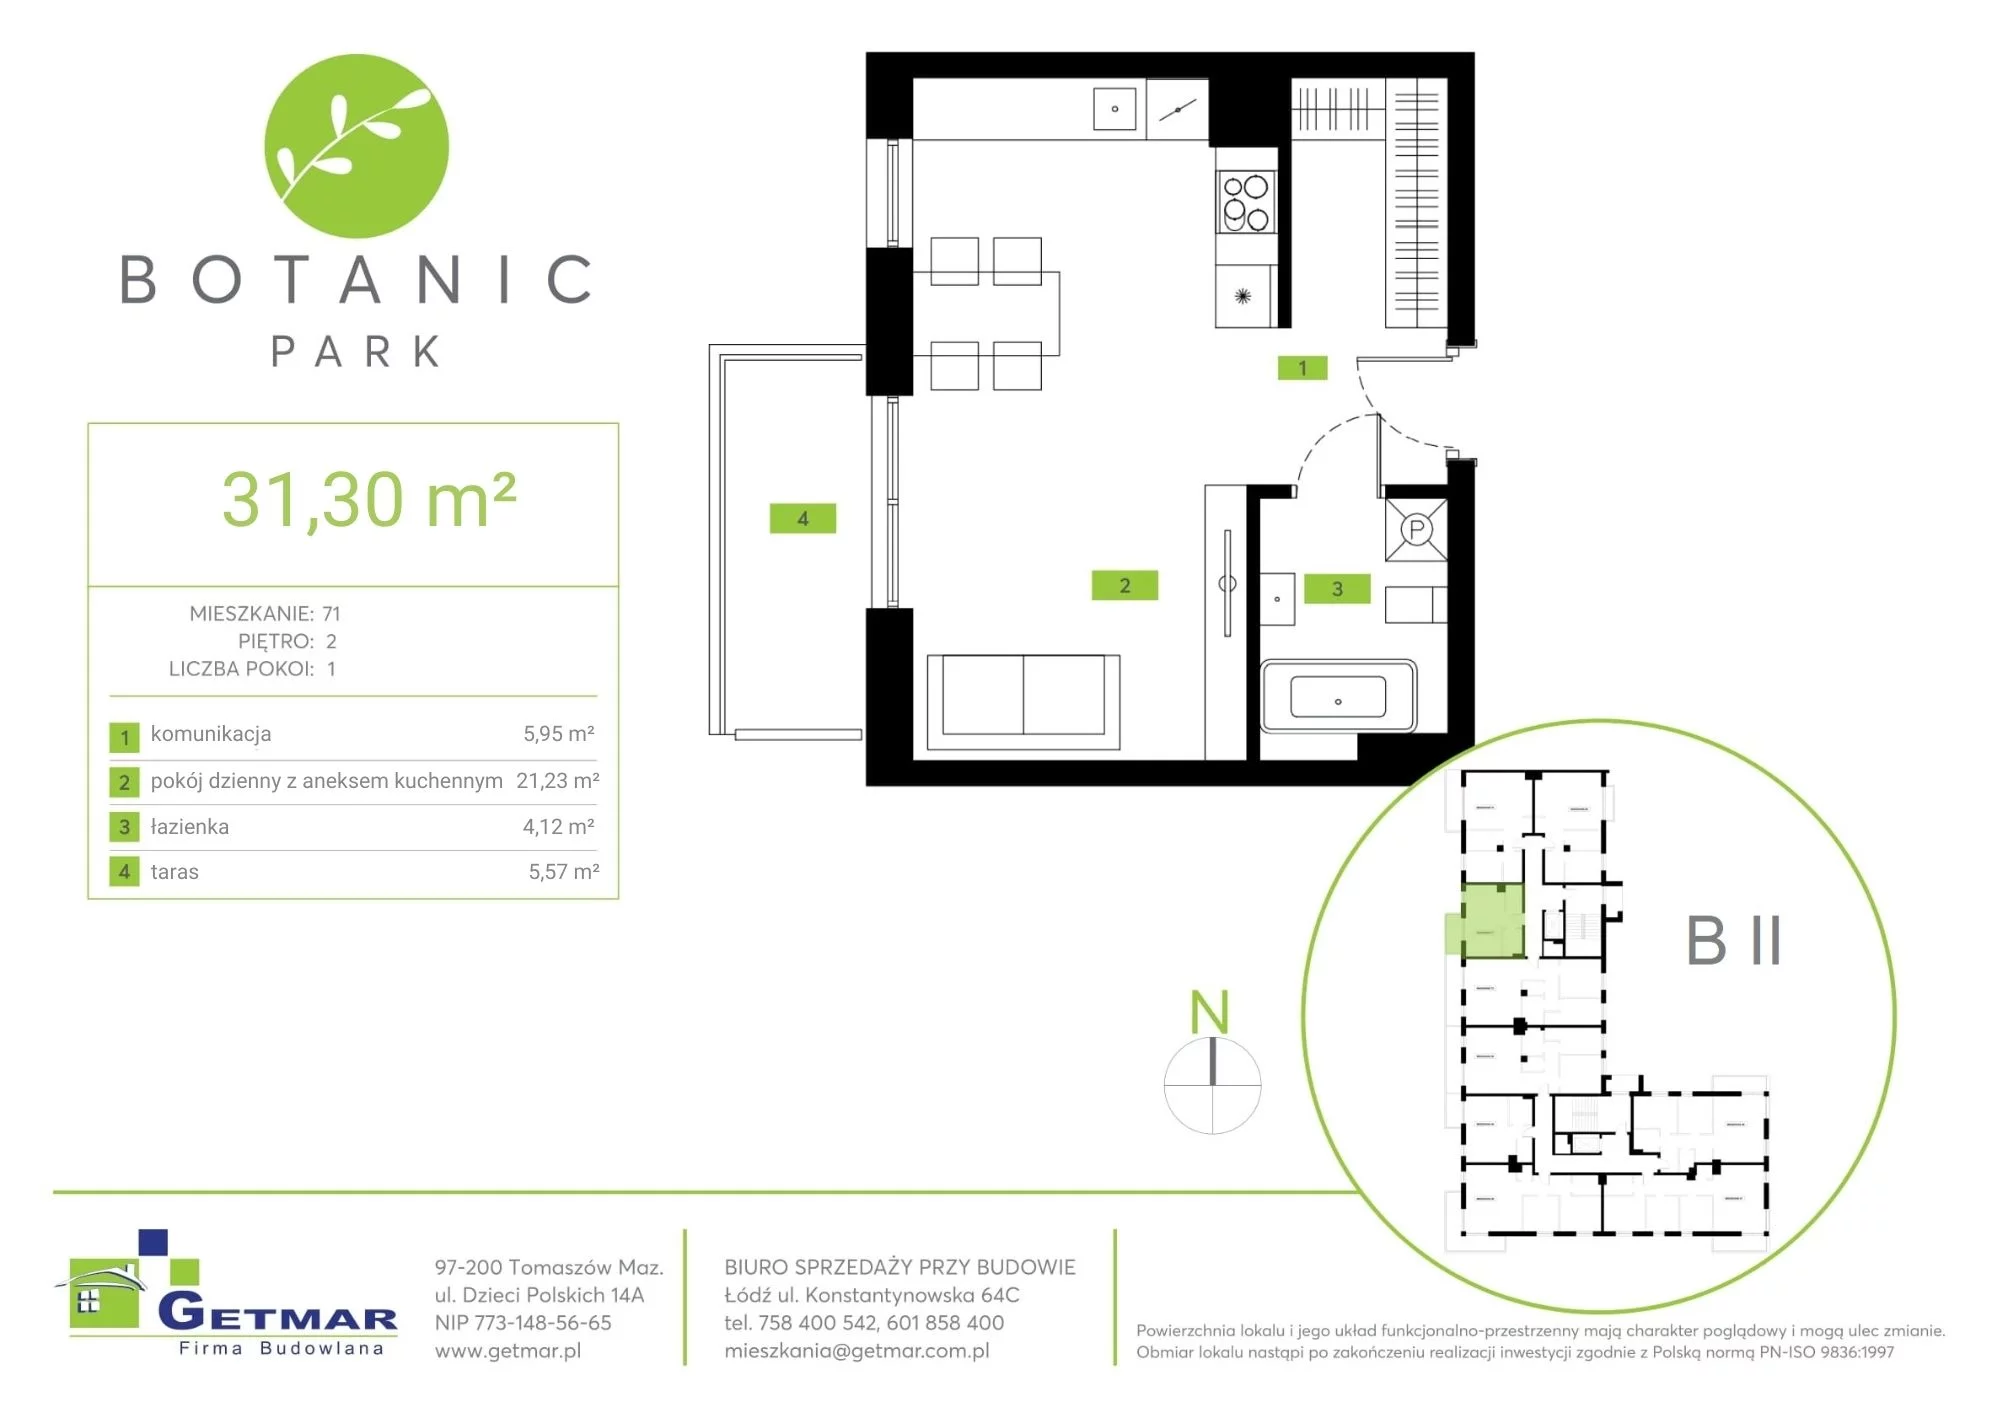 Mieszkanie 31,30 m², piętro 2, oferta nr 71, Botanic Park, Łódź, Polesie, Złotno, ul. Konstantynowska 64c